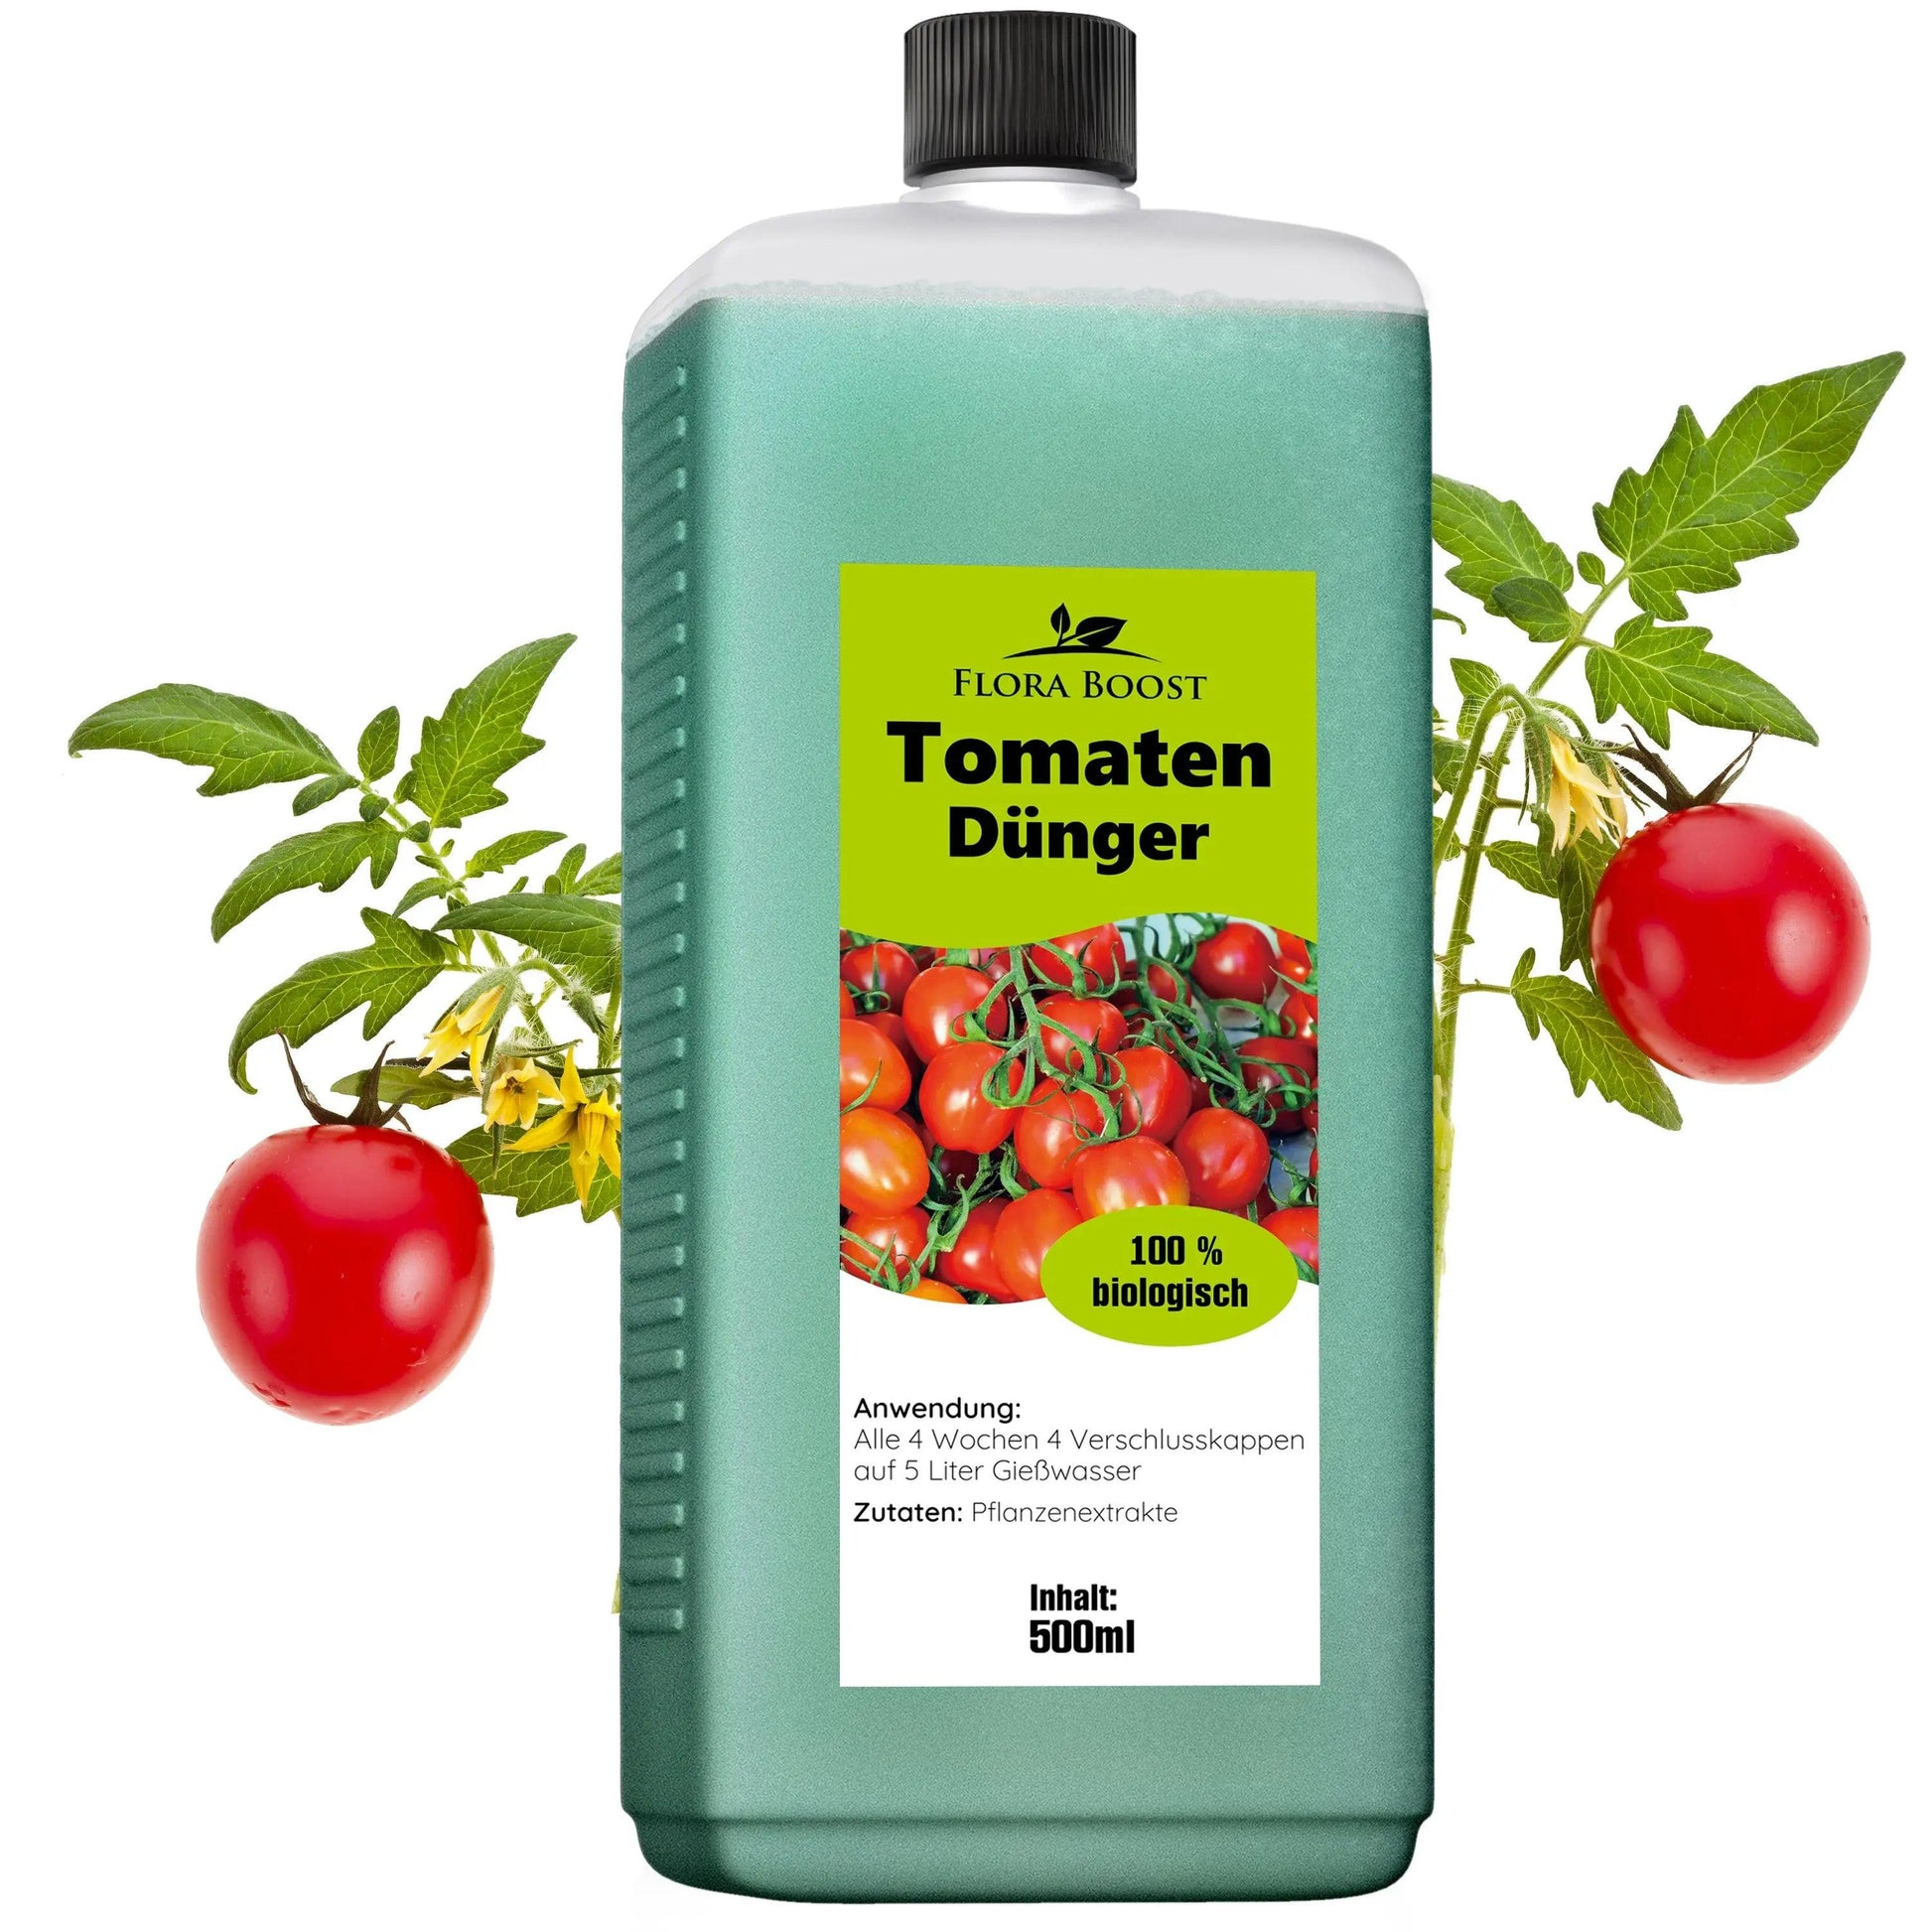 Tomaten Pflanzen Dünger für mehr Ertrag und gegen Krankheiten - Flora Boost